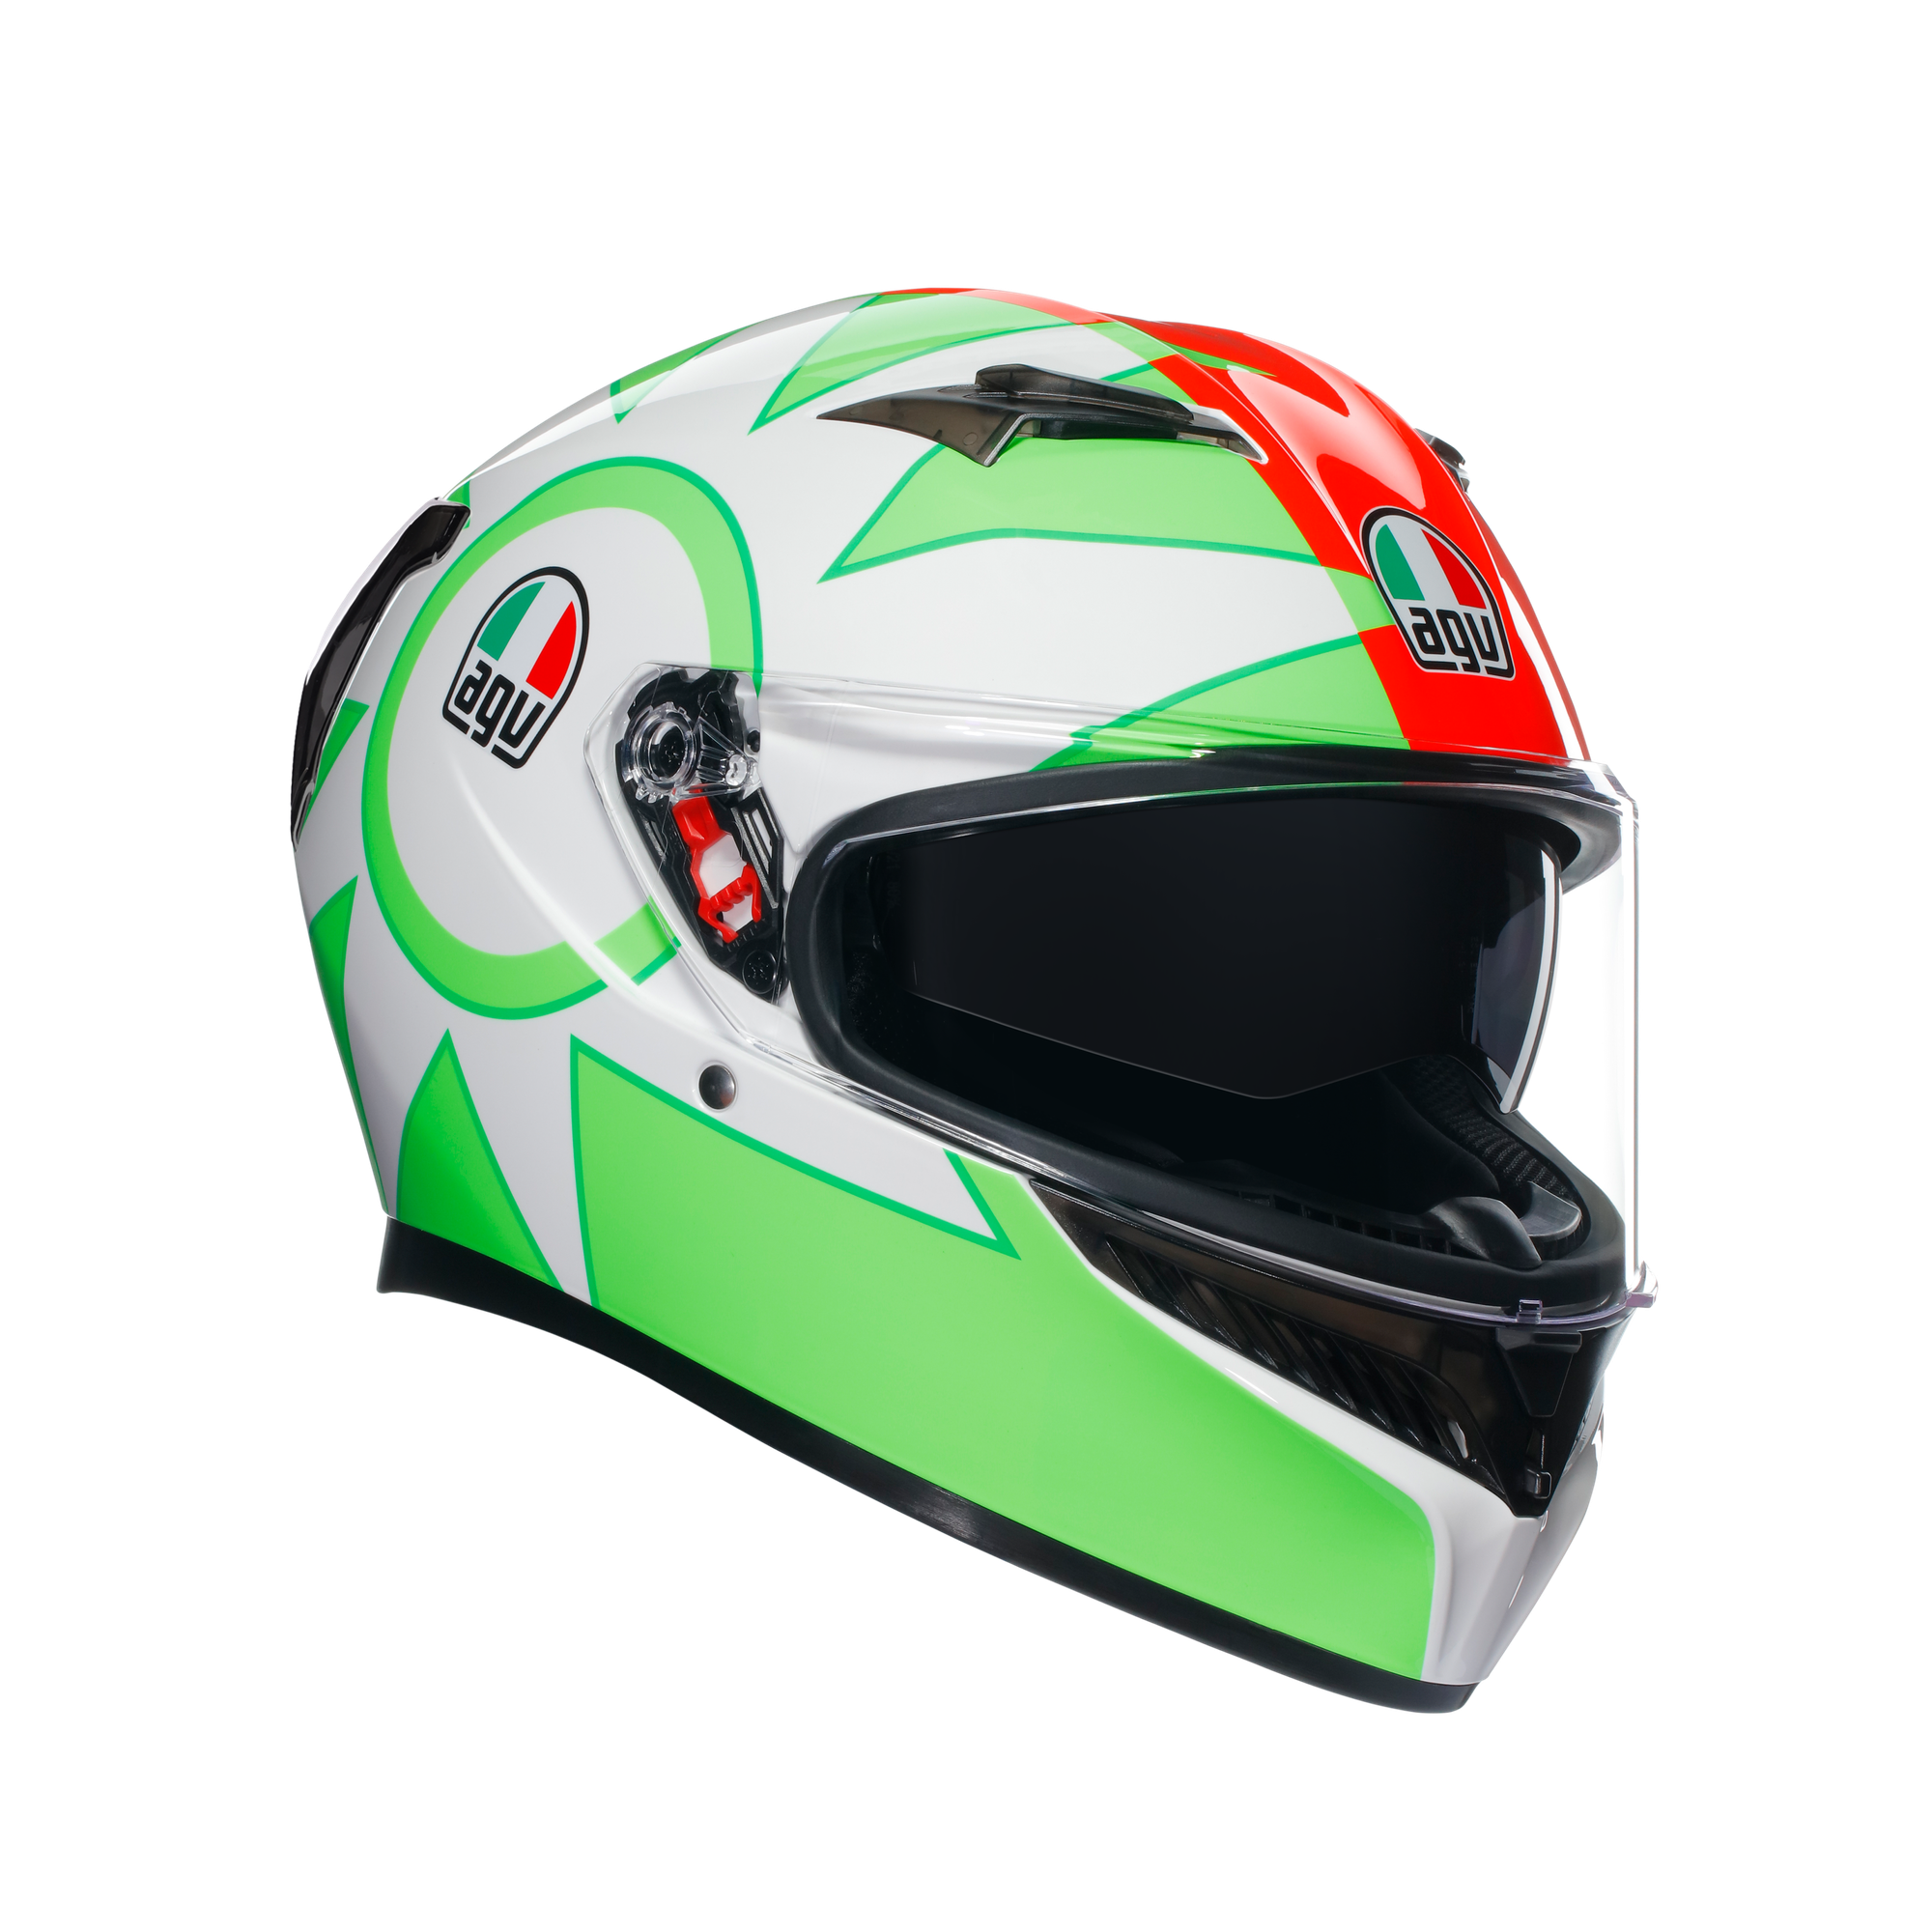 フルフェイスヘルメット | K3 AGV JIST MPLK Asian Fit 005-ROSSI MUGELLO 2018 SG認証